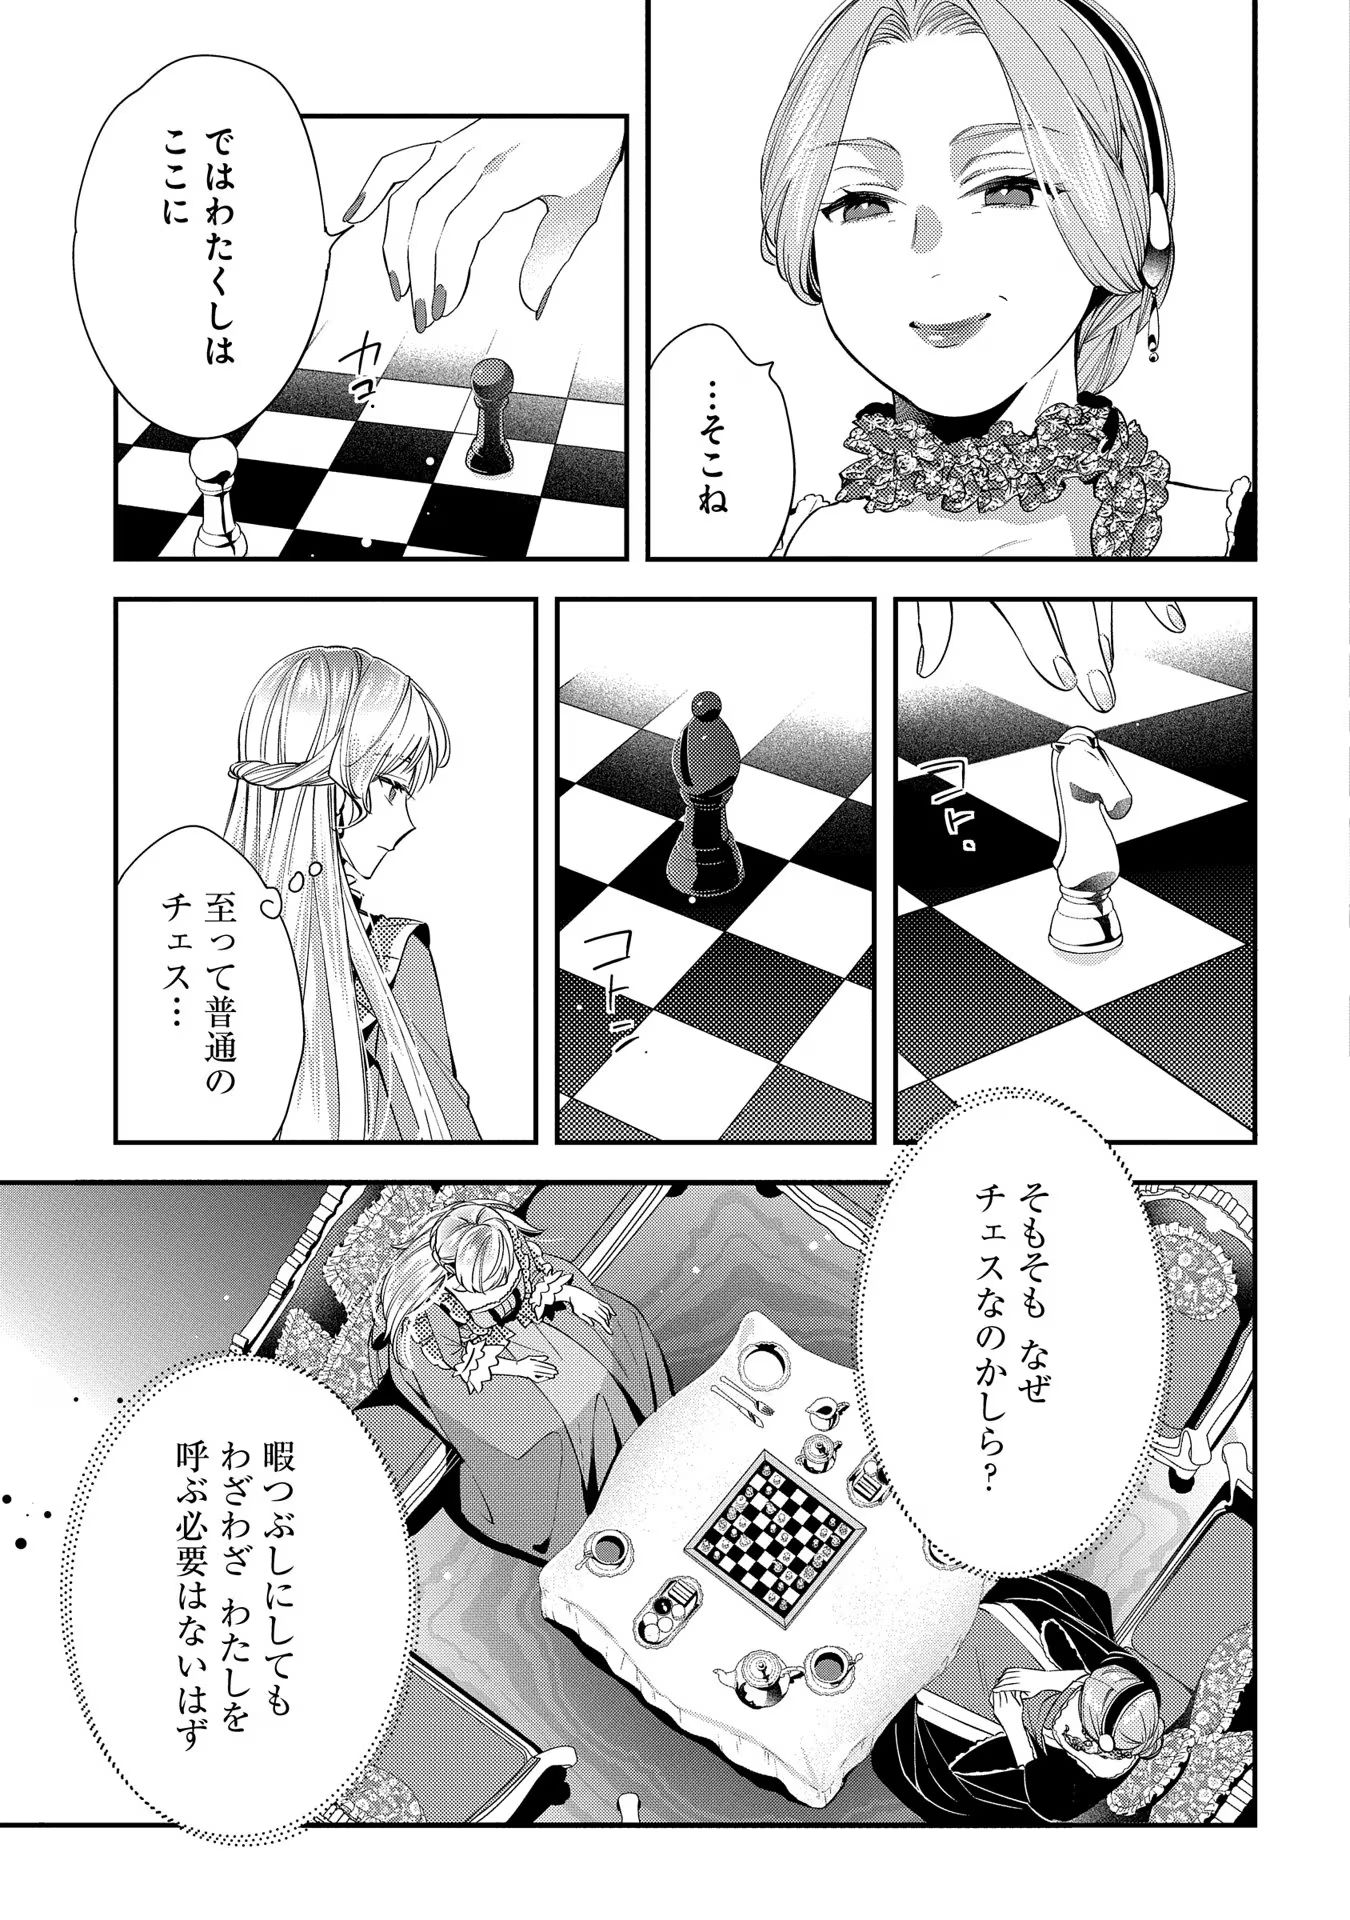 Outaishi ni Konyaku Hakisareta no de, Mou Baka no Furi wa Yameyou to Omoimasu - Chapter 6 - Page 22